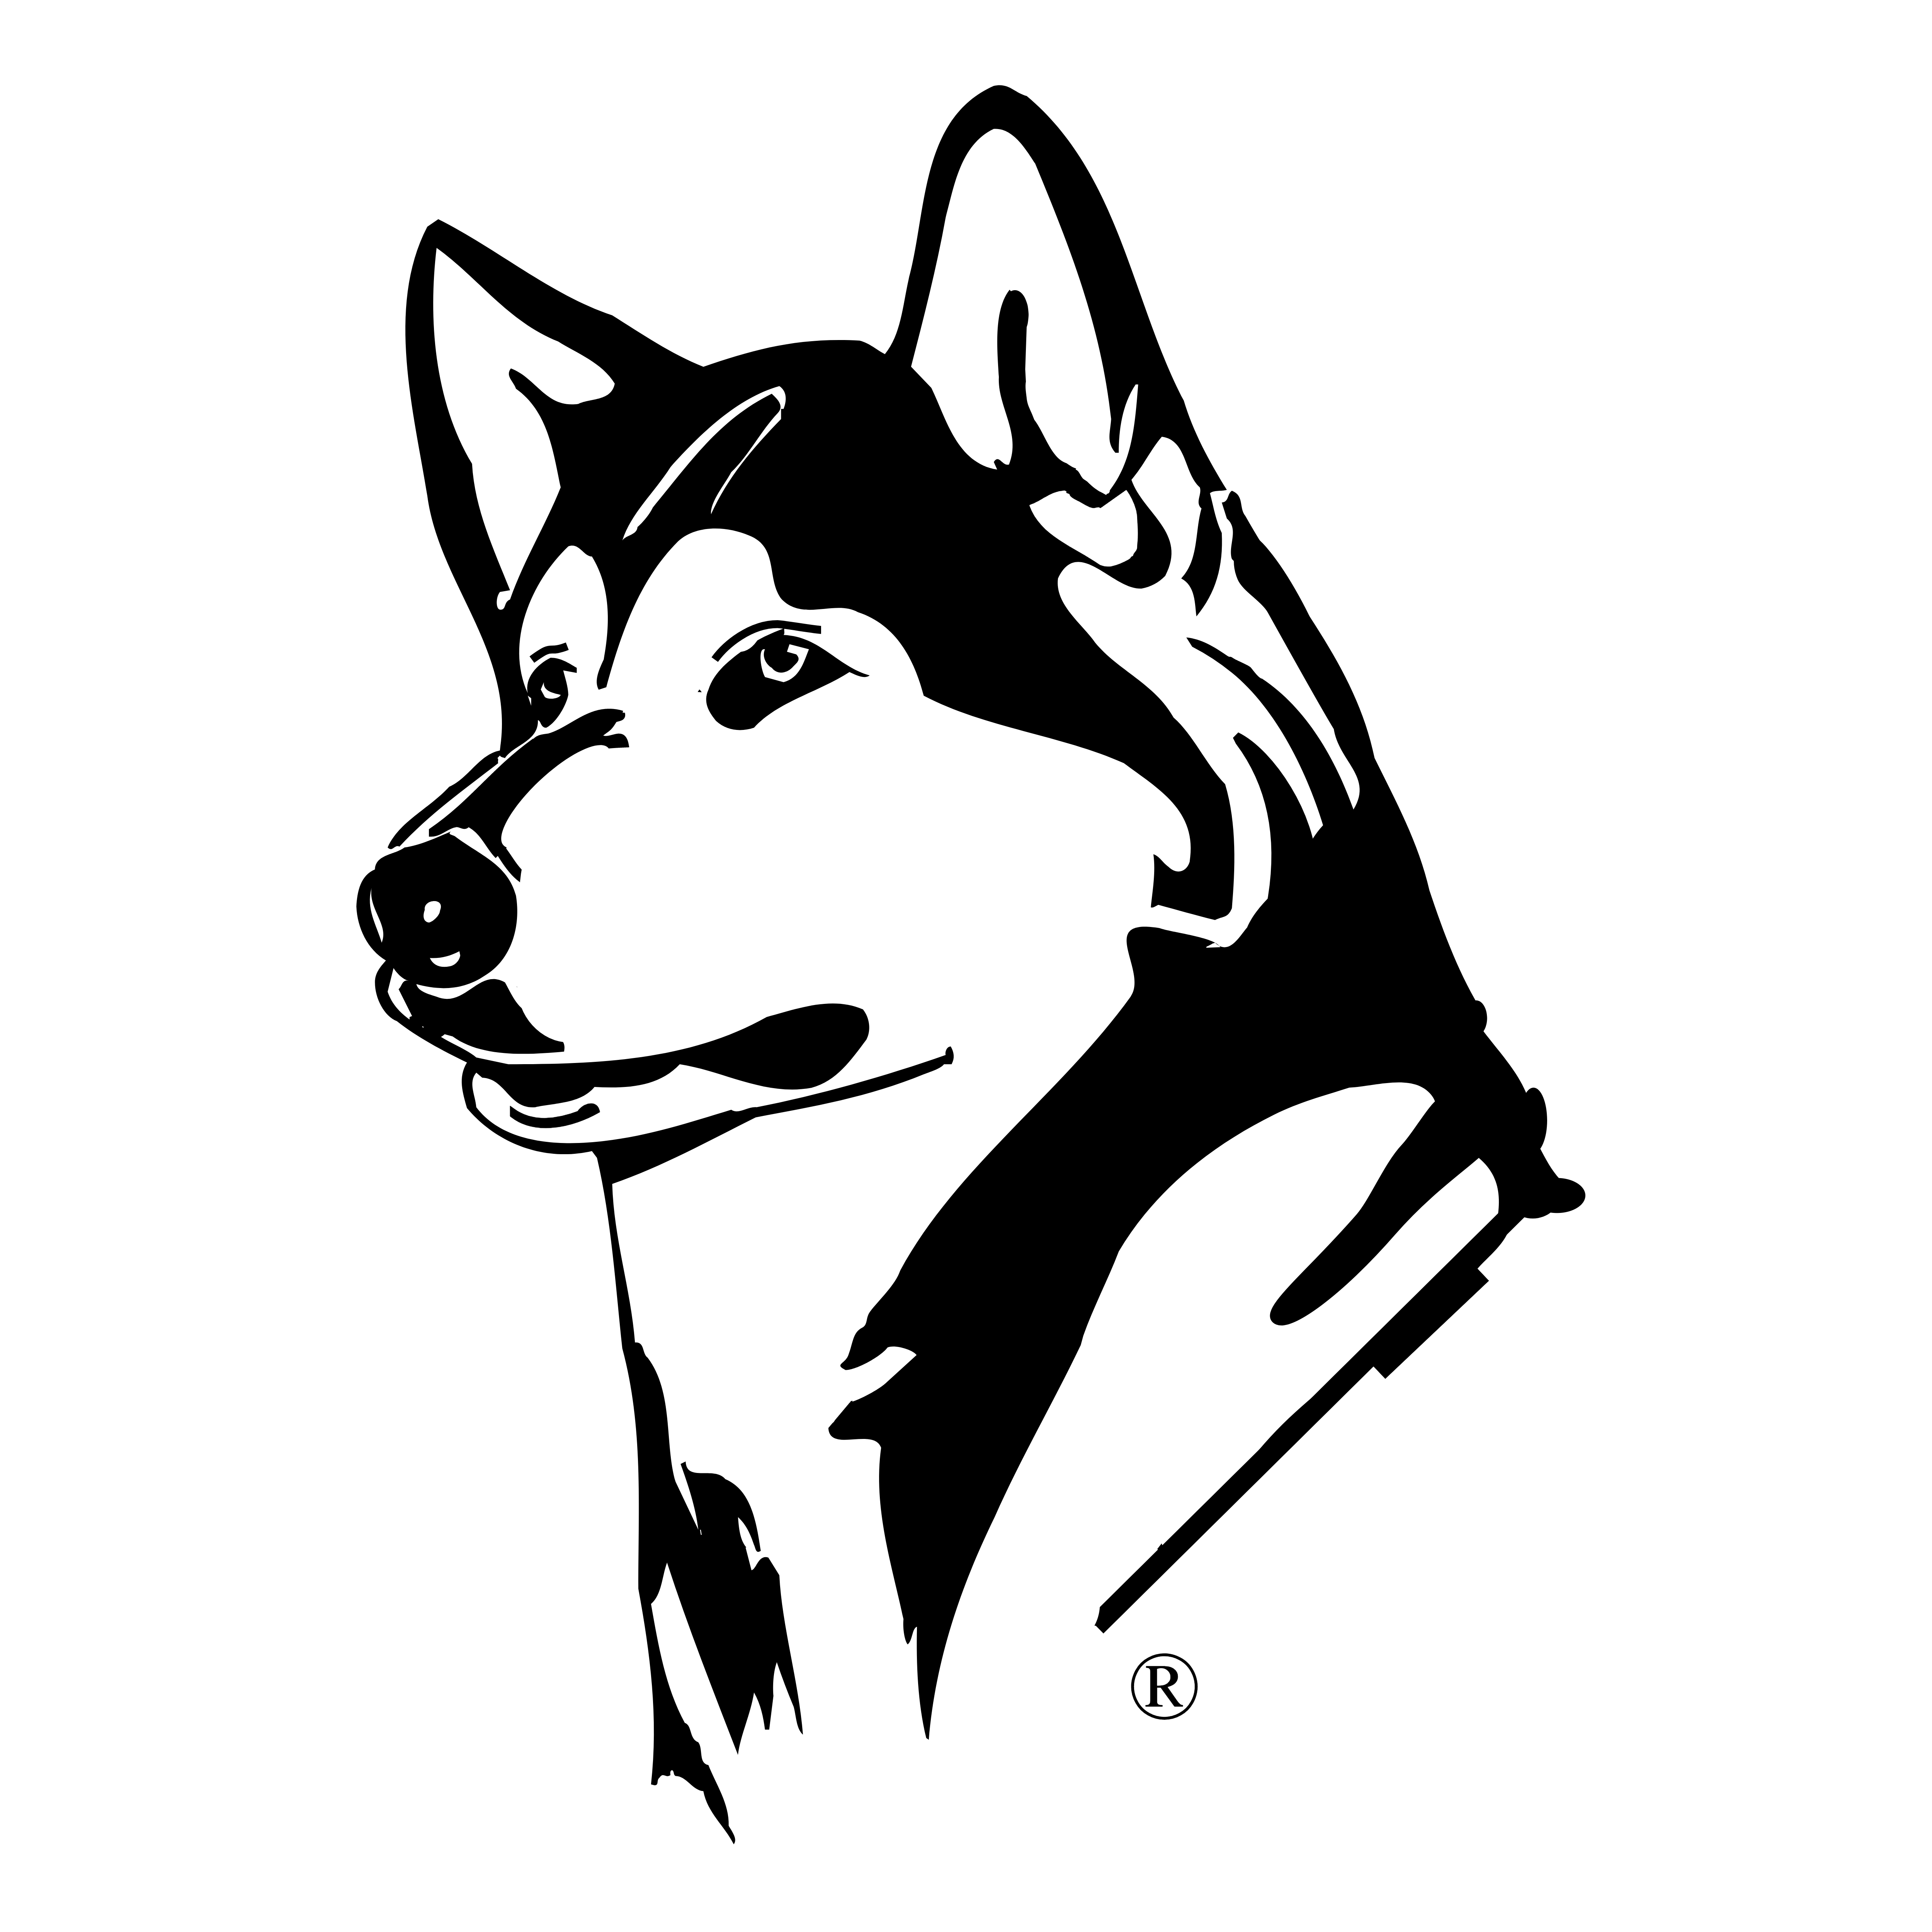 Washington Huskies Logos Download